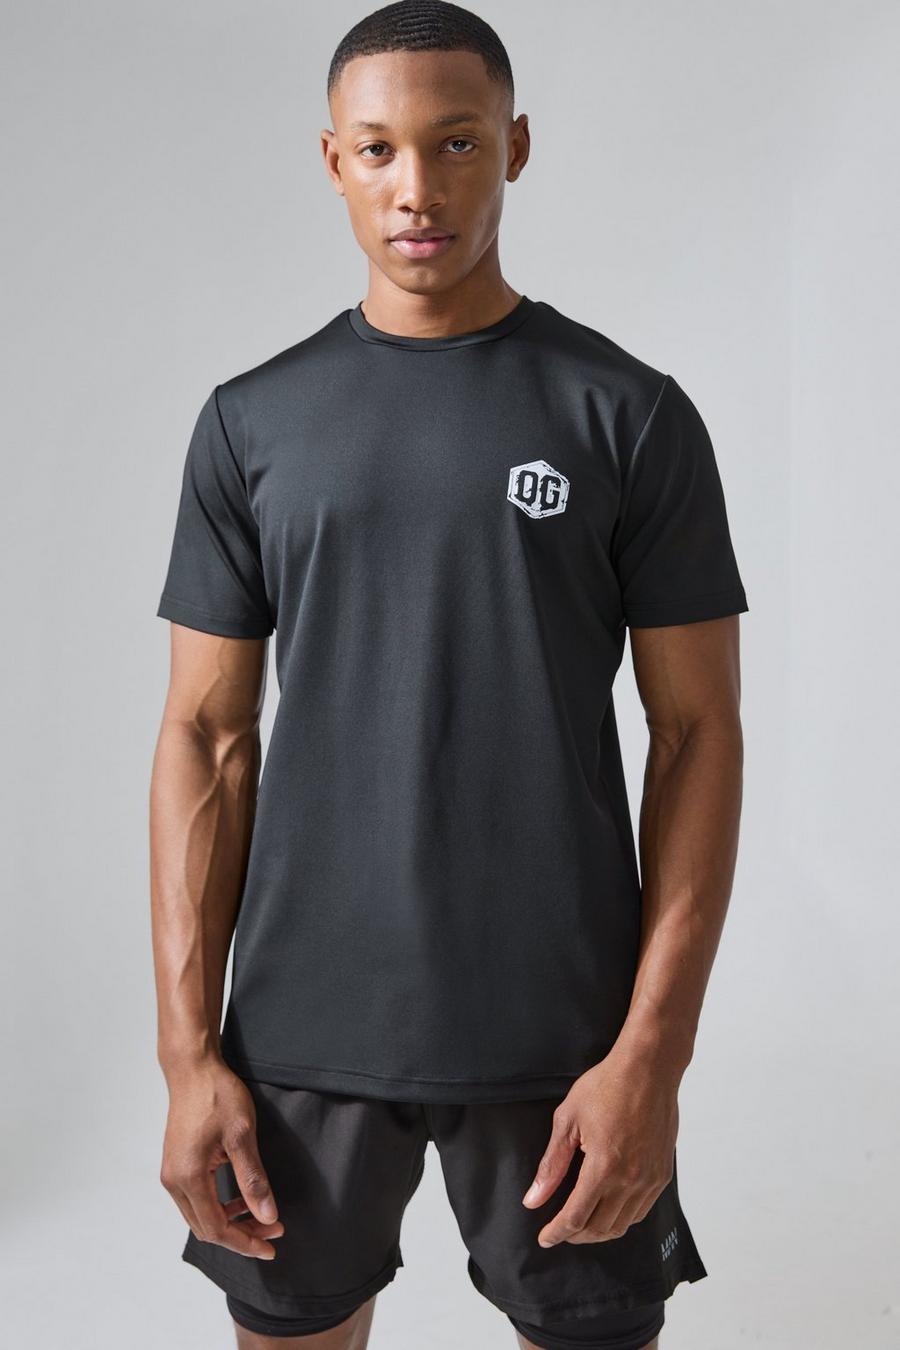 Man Active X Og Gym Slim-Fit Performance T-Shirt, Black